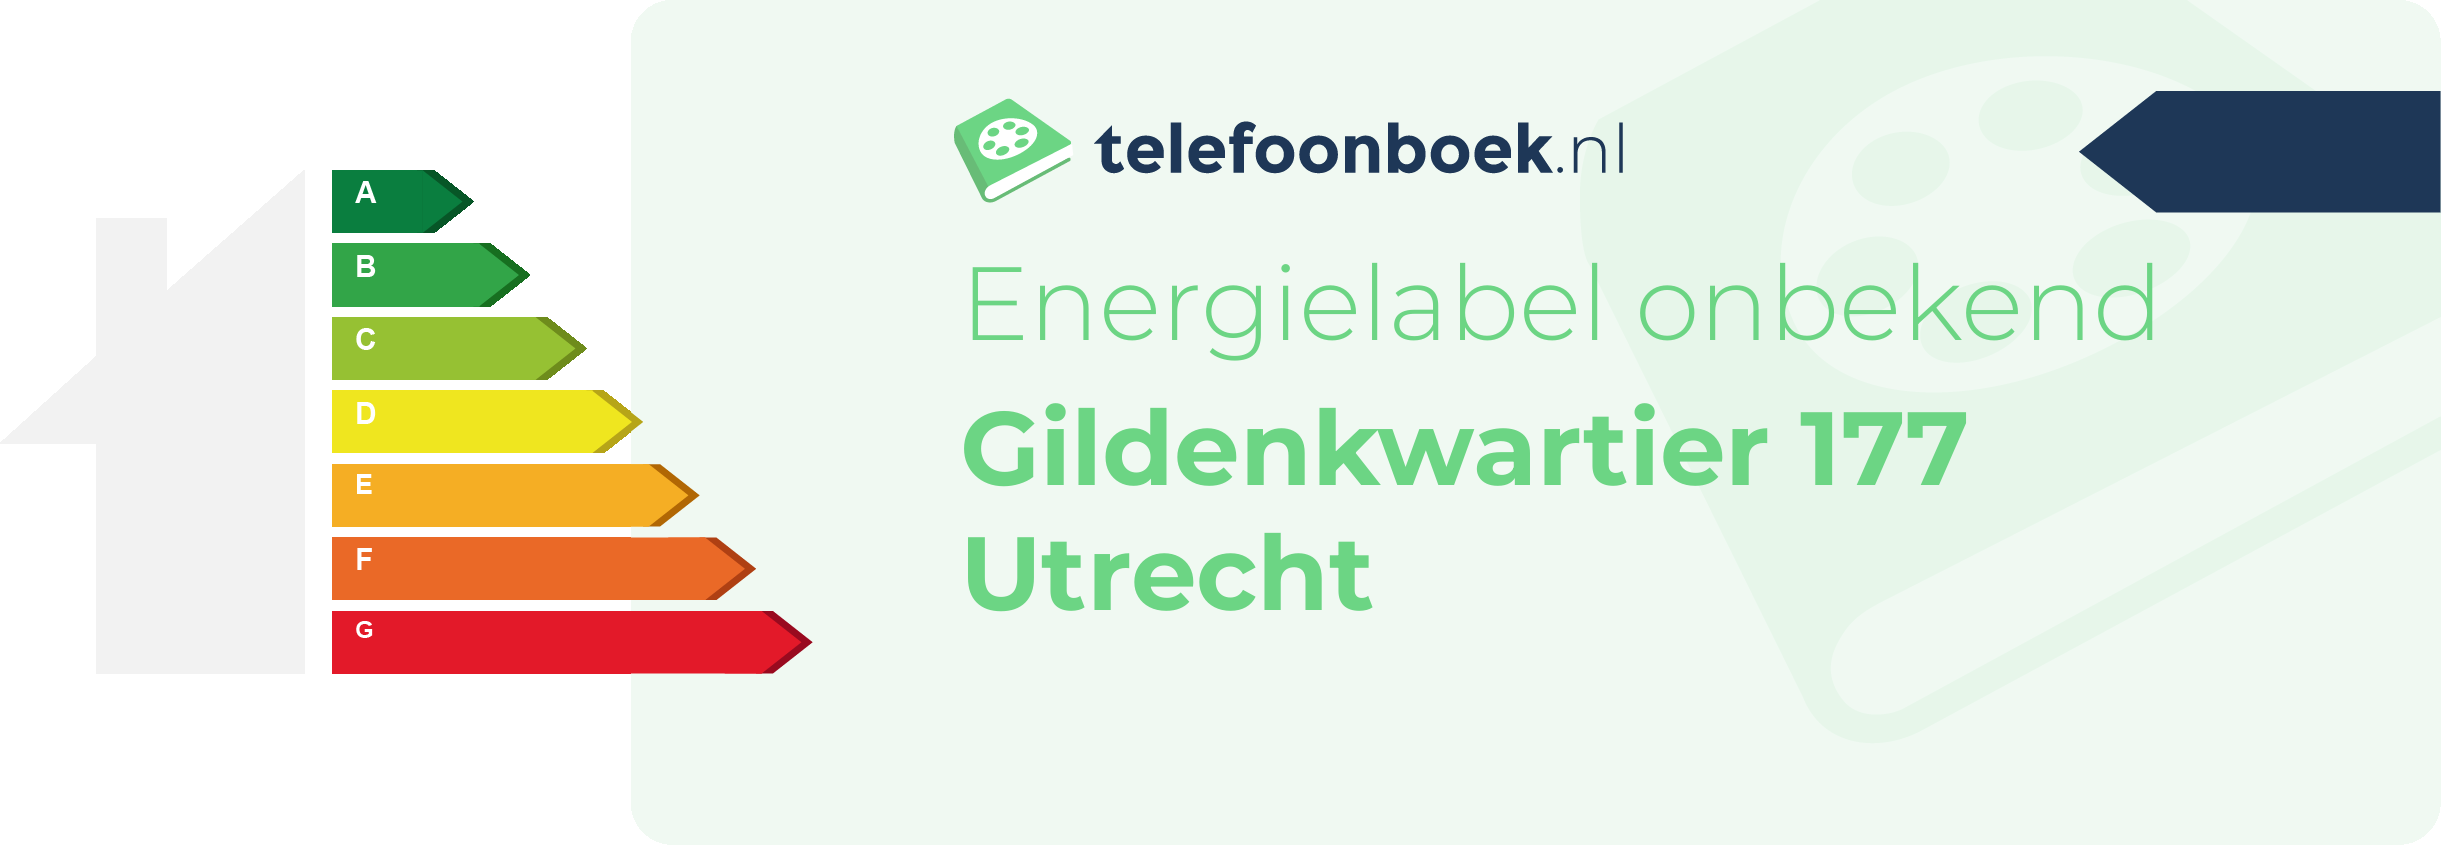 Energielabel Gildenkwartier 177 Utrecht